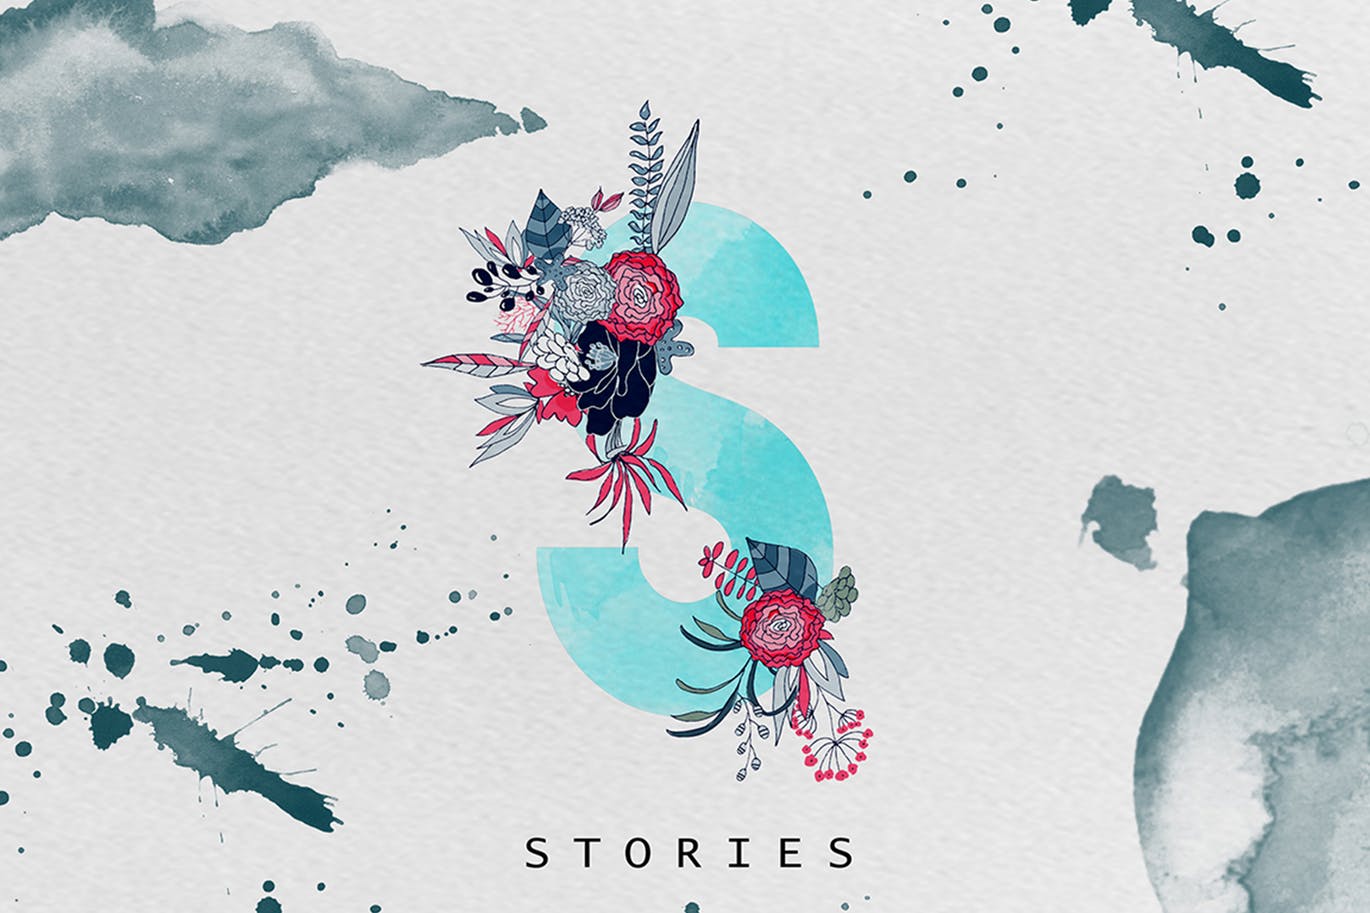 创意水彩手绘花卉装饰字体素材 Stories 2插图